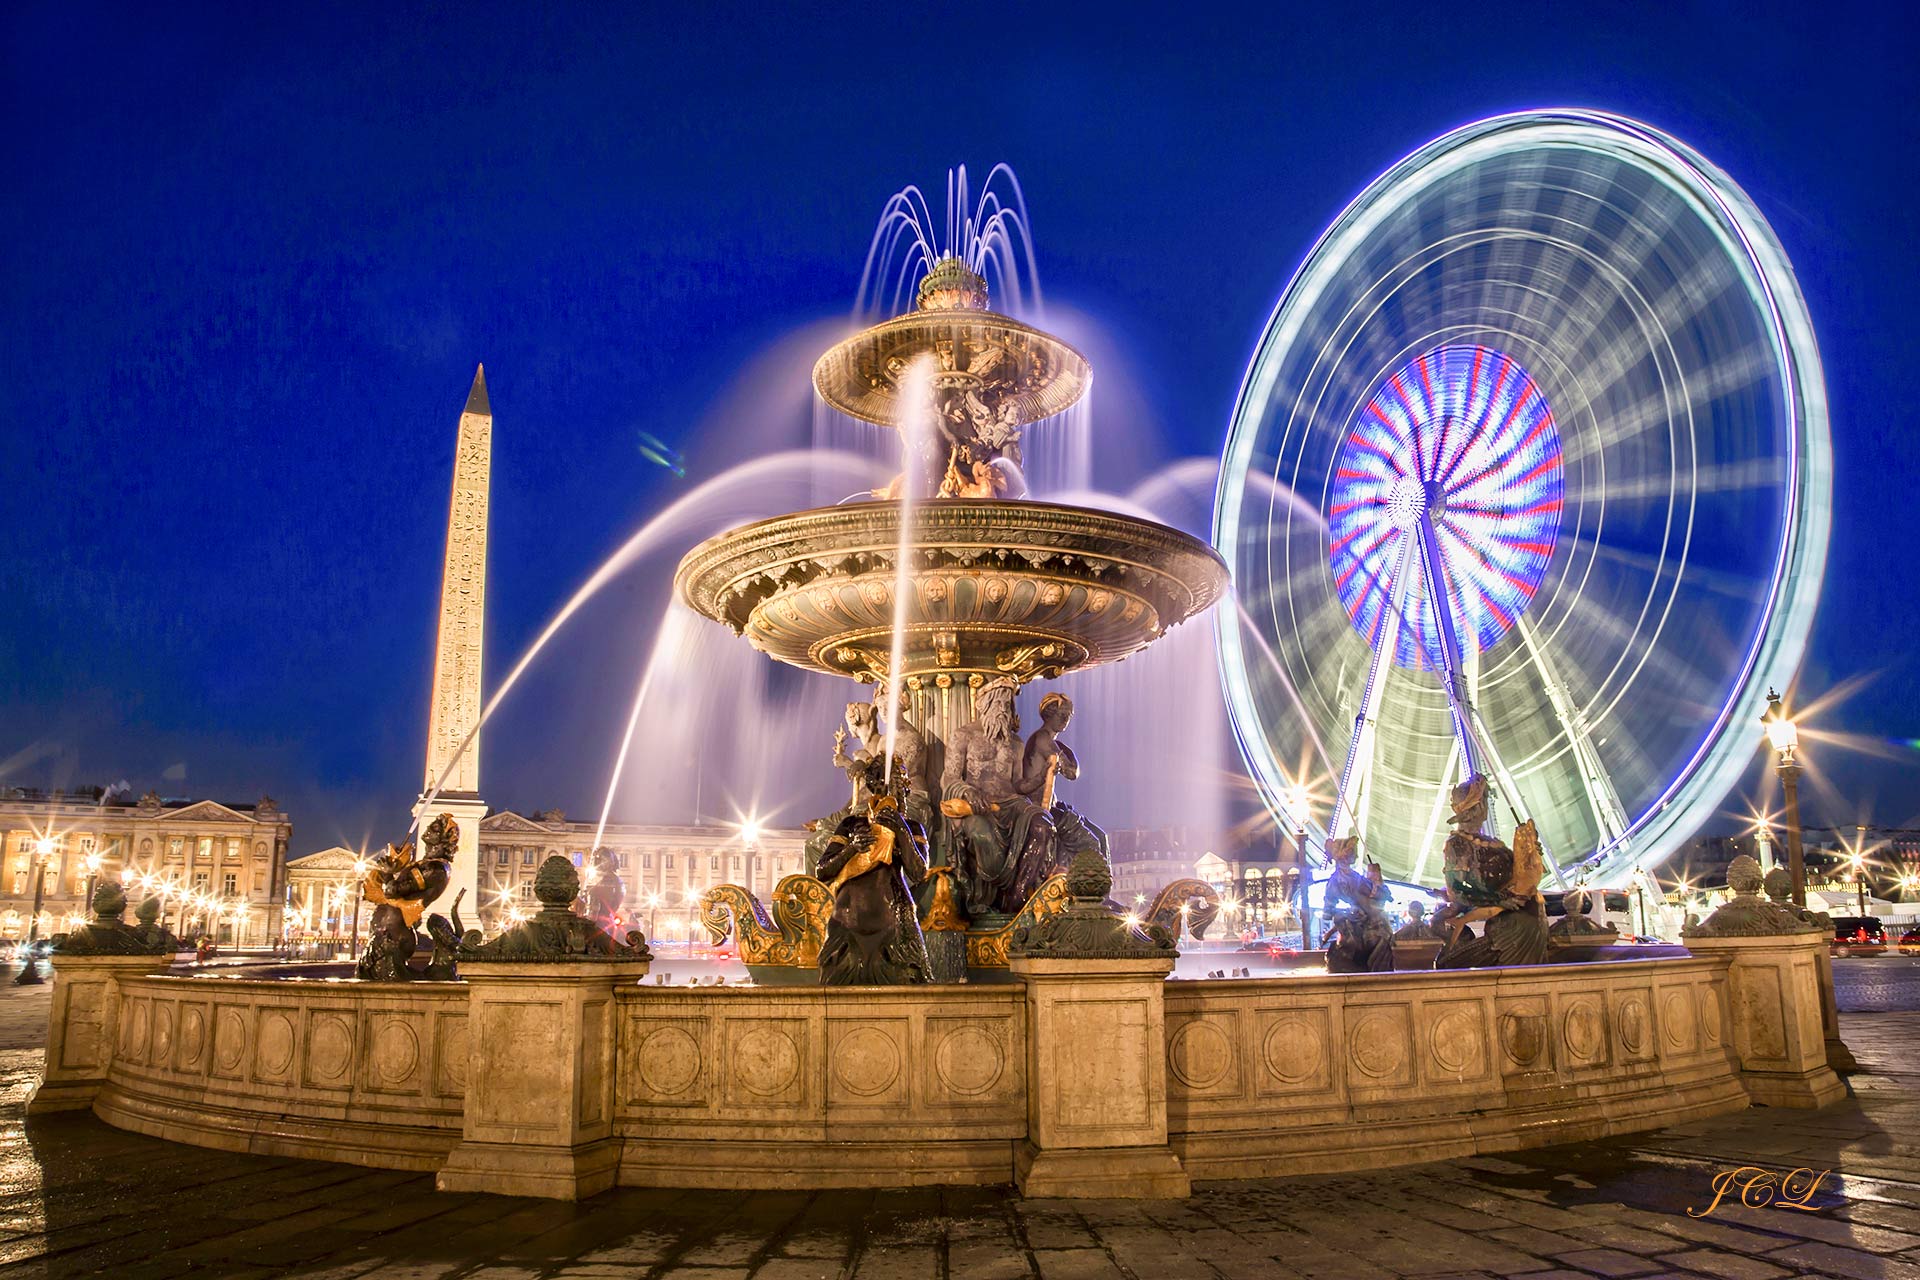 Belle photographie; La place de la Concorde, avec plus de 8 ha, est la plus grande place de Paris. Elle est située sur la Rive droite, dans le 8e en bas des Champs-Élysées, à l'est se trouve le jardin des Tuileries . La rue Royale au nord mène vers la Madeleine et au sud, le pont de la Concorde enjambe la seine pour vous conduire au palais Bourbon (Chambre des Députés. Le jardin des Tuileries est très proche du quartier Saint-Germain.